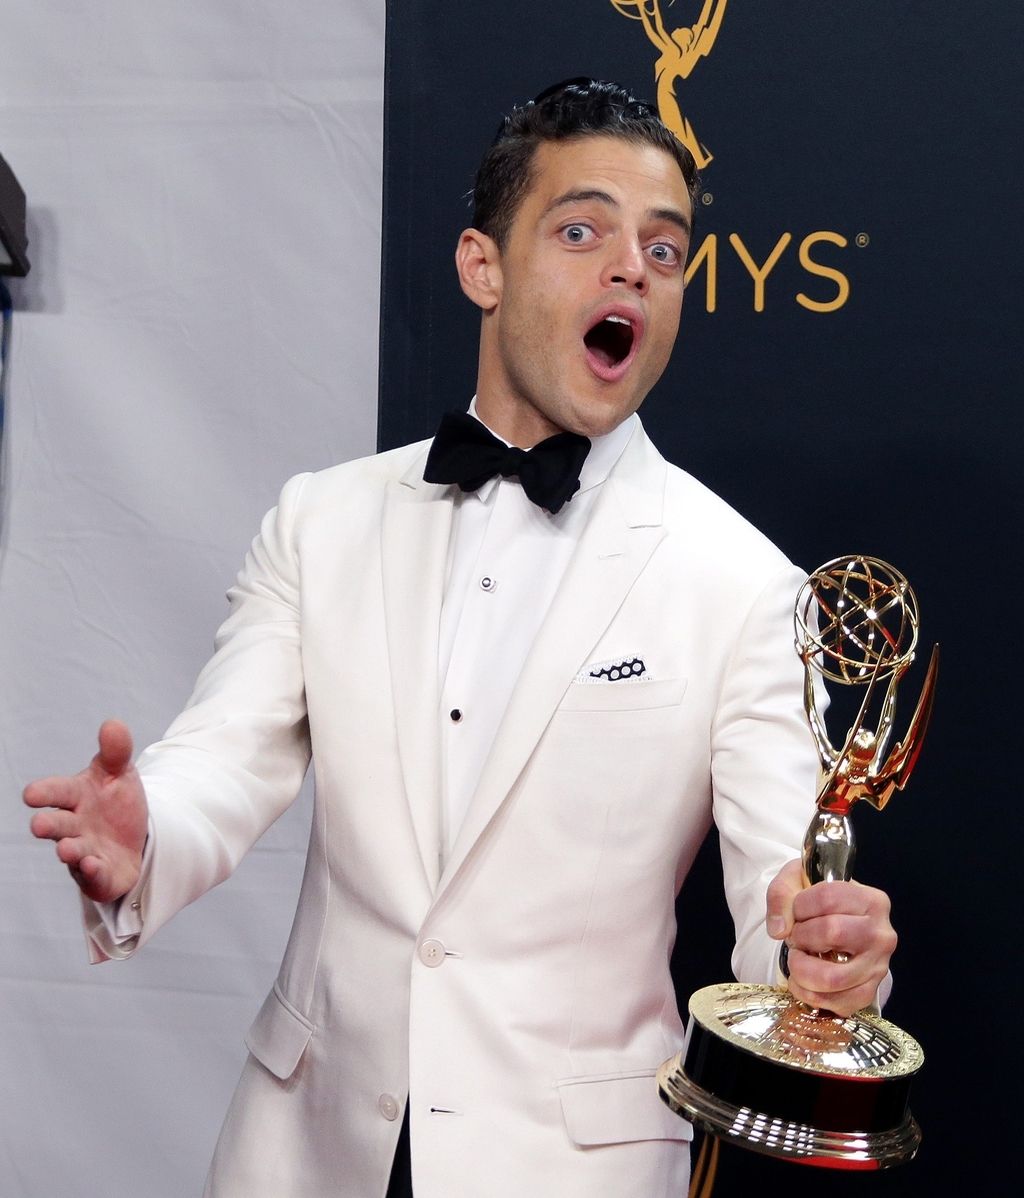 Premios Emmy 2016